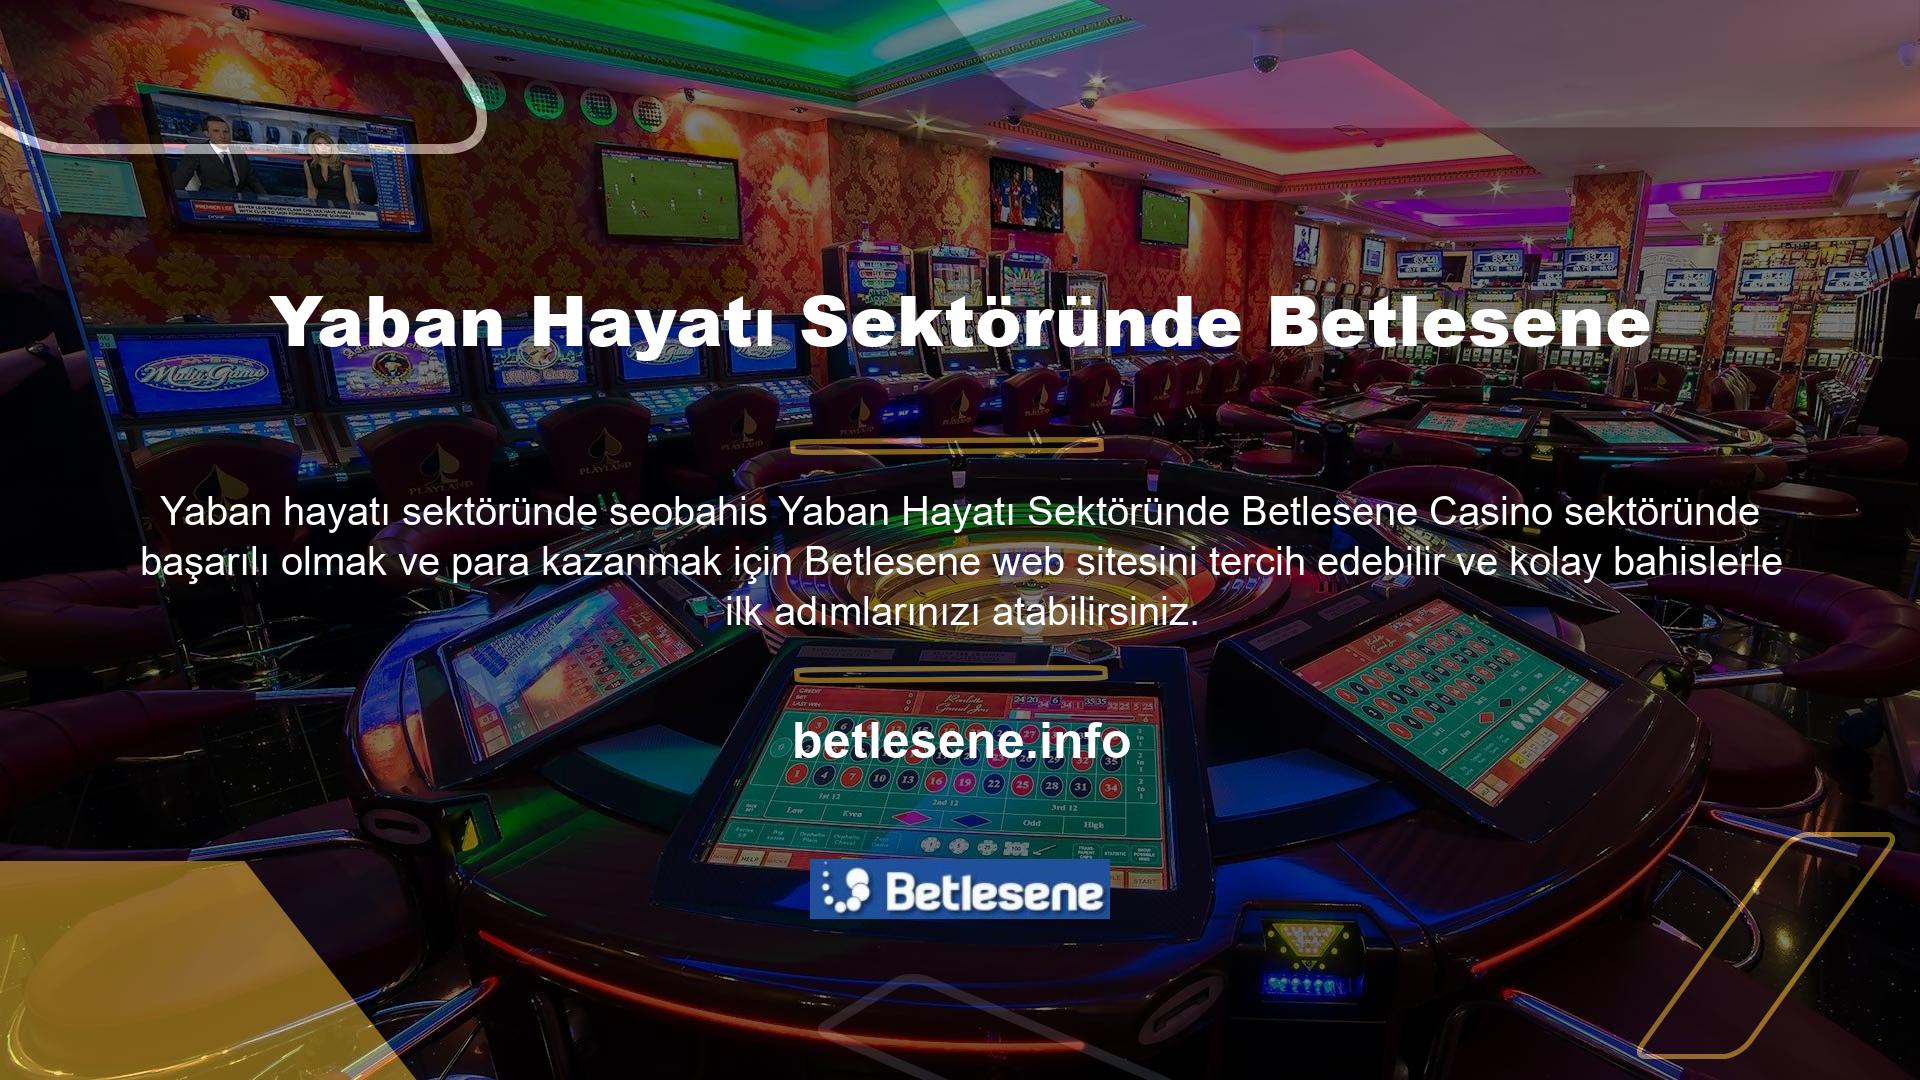 Betlesene canlı bahis ve casino oyun siteleri ile ilgili tüm sorunlar, 7/24 canlı destek hattımız aracılığıyla kolayca çözülebilir